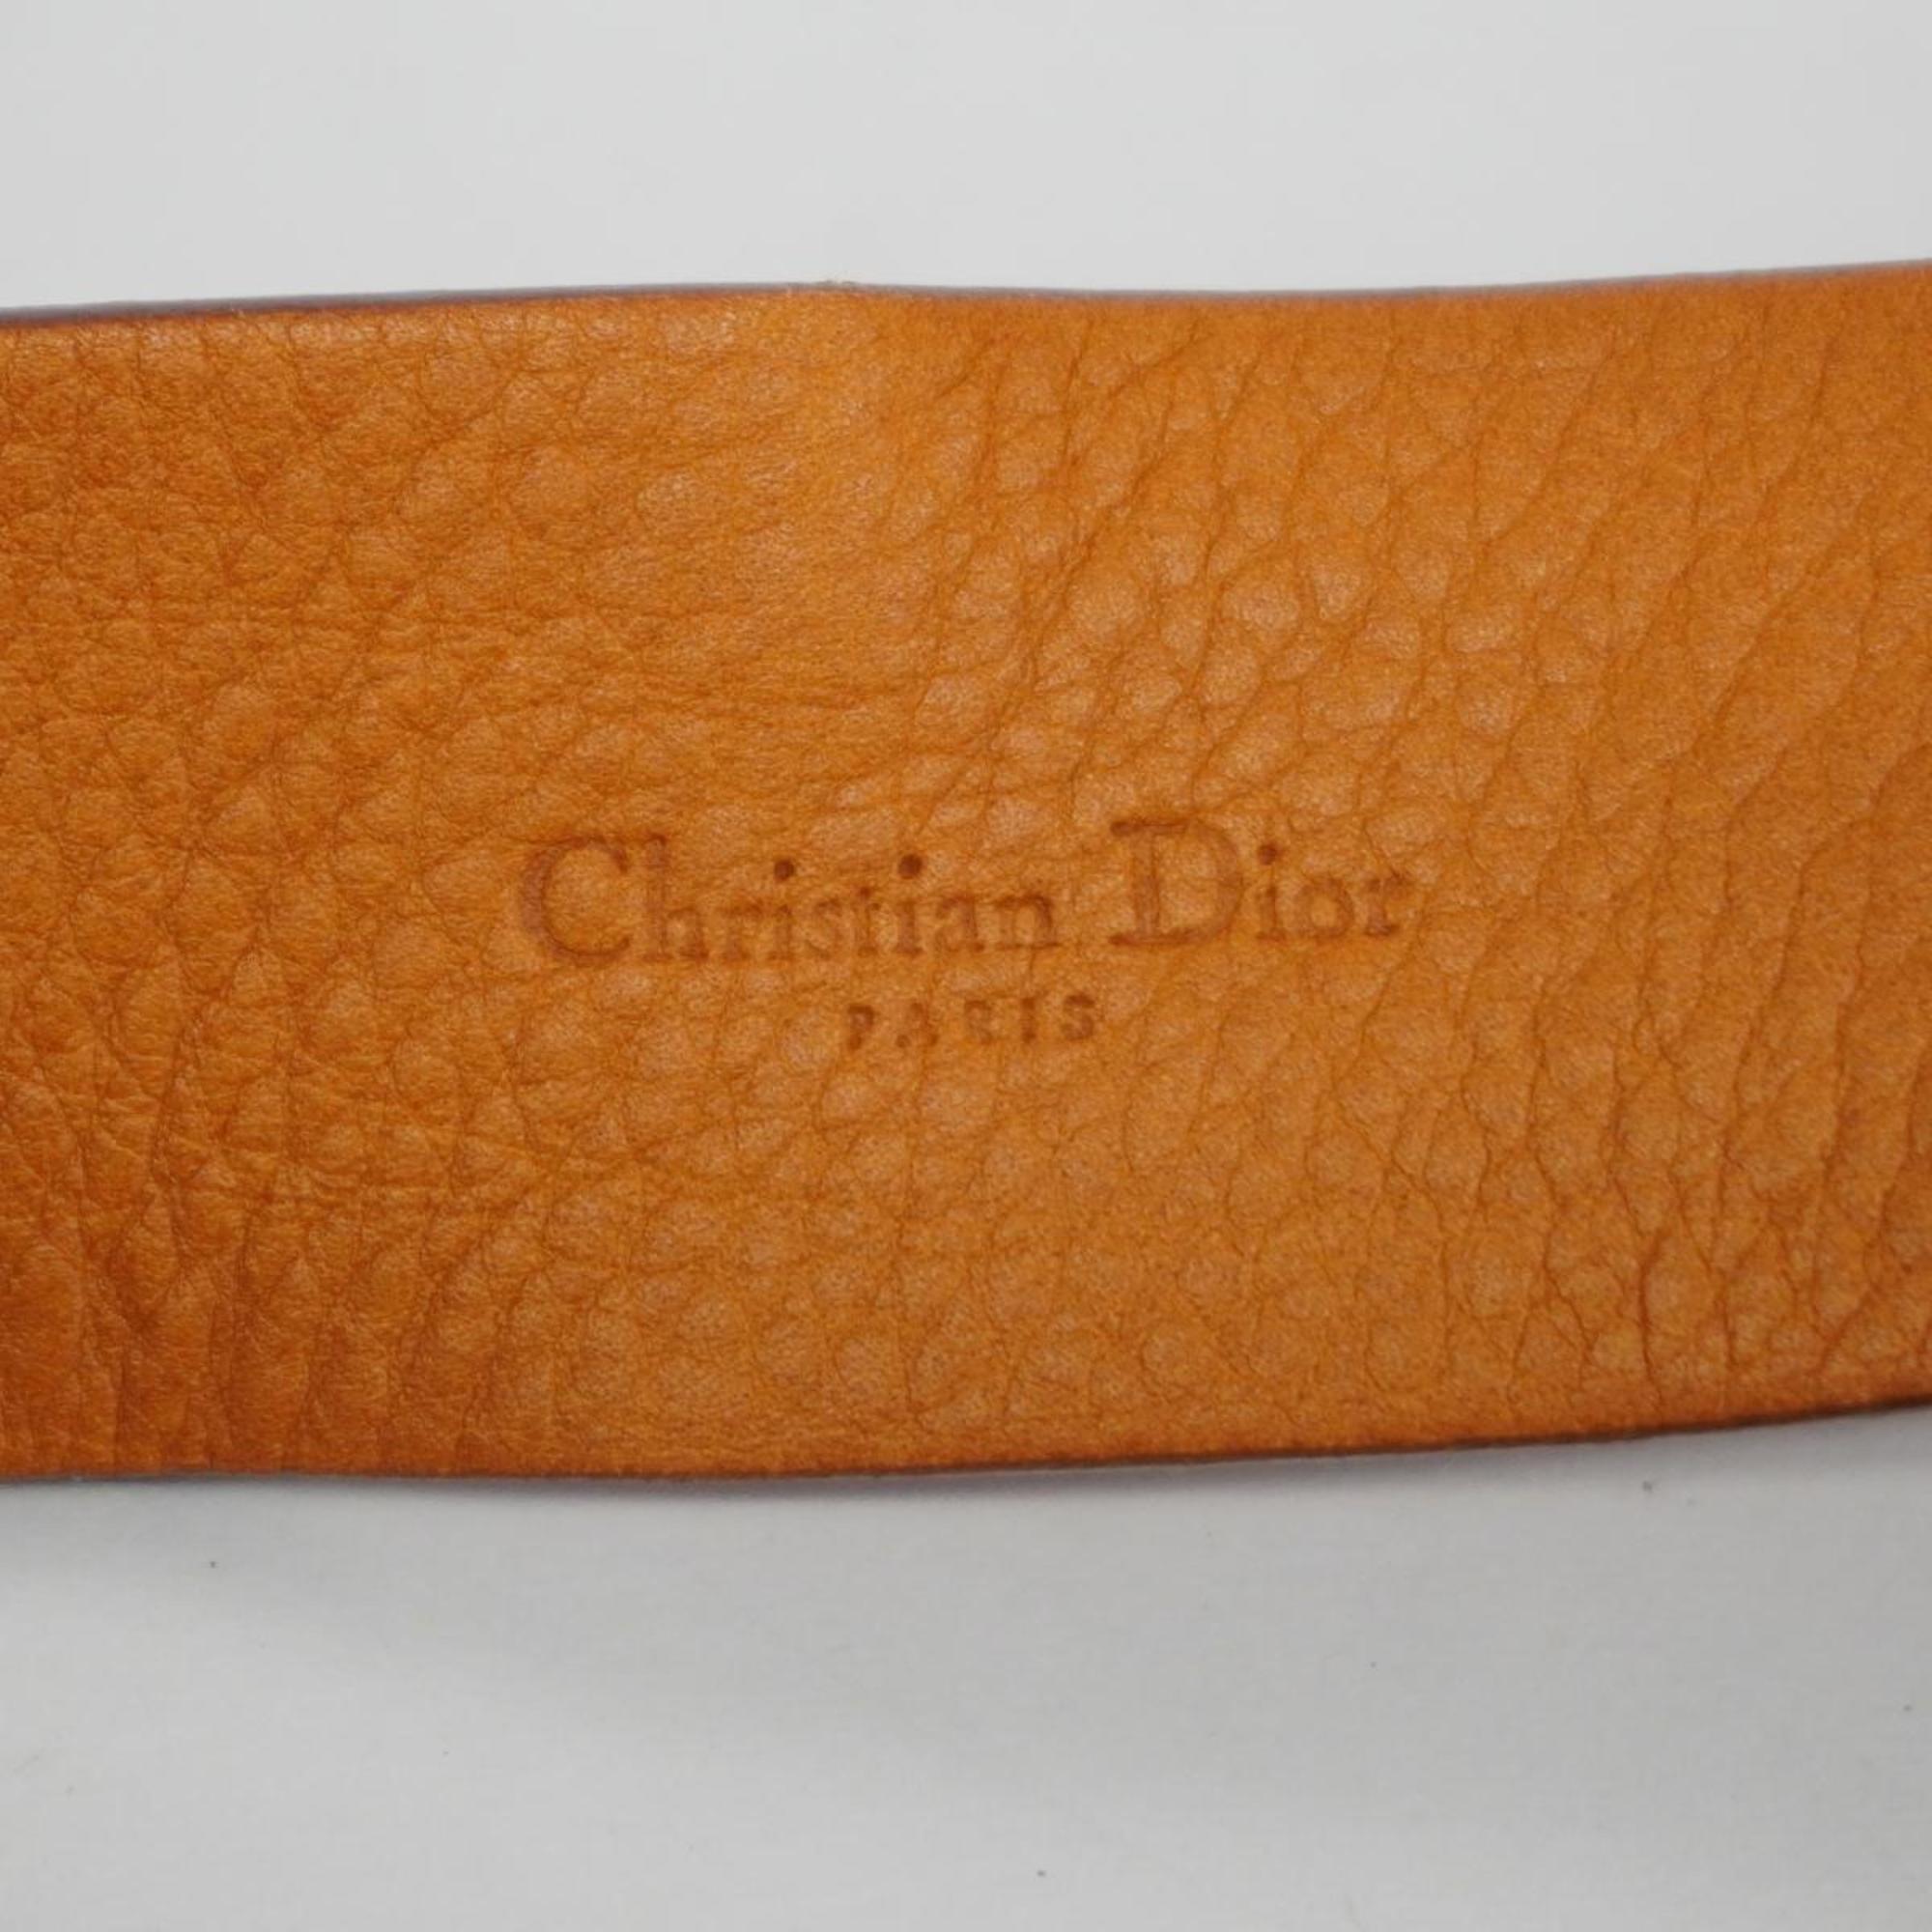 クリスチャン・ディオール(Christian Dior) クリスチャンディオール ウエストバッグ サドルバッグ レザー ブラウン   レディース